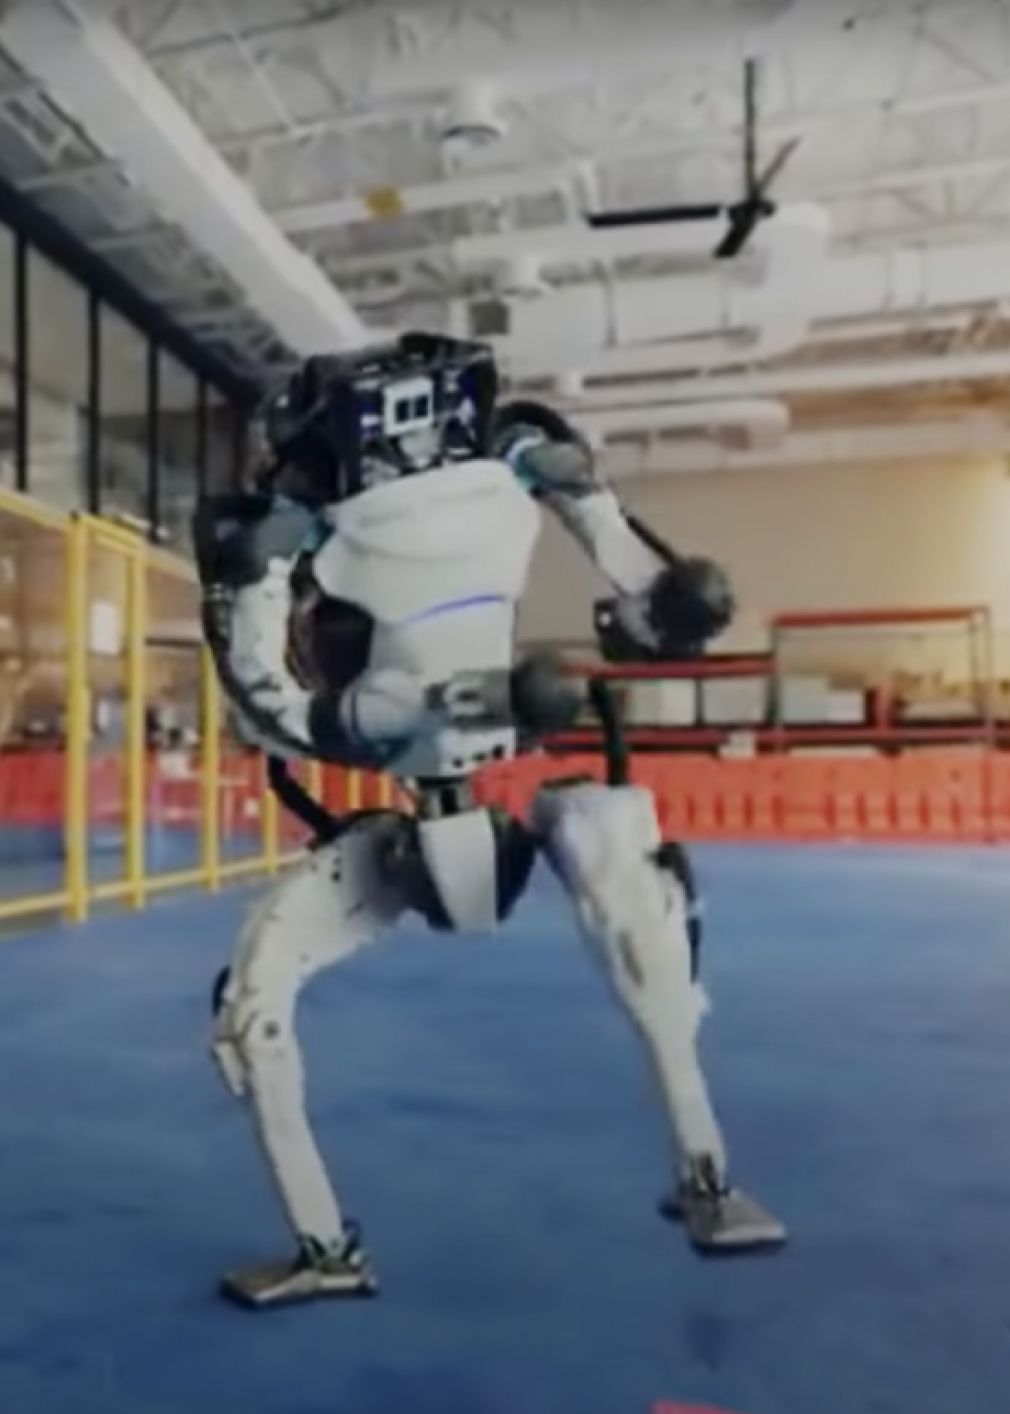 Számos alkalommal írtunk már a Boston Dynamics robotfejlesztéseiről. Most vidám oldalát mutatja meg egyik robotjuk